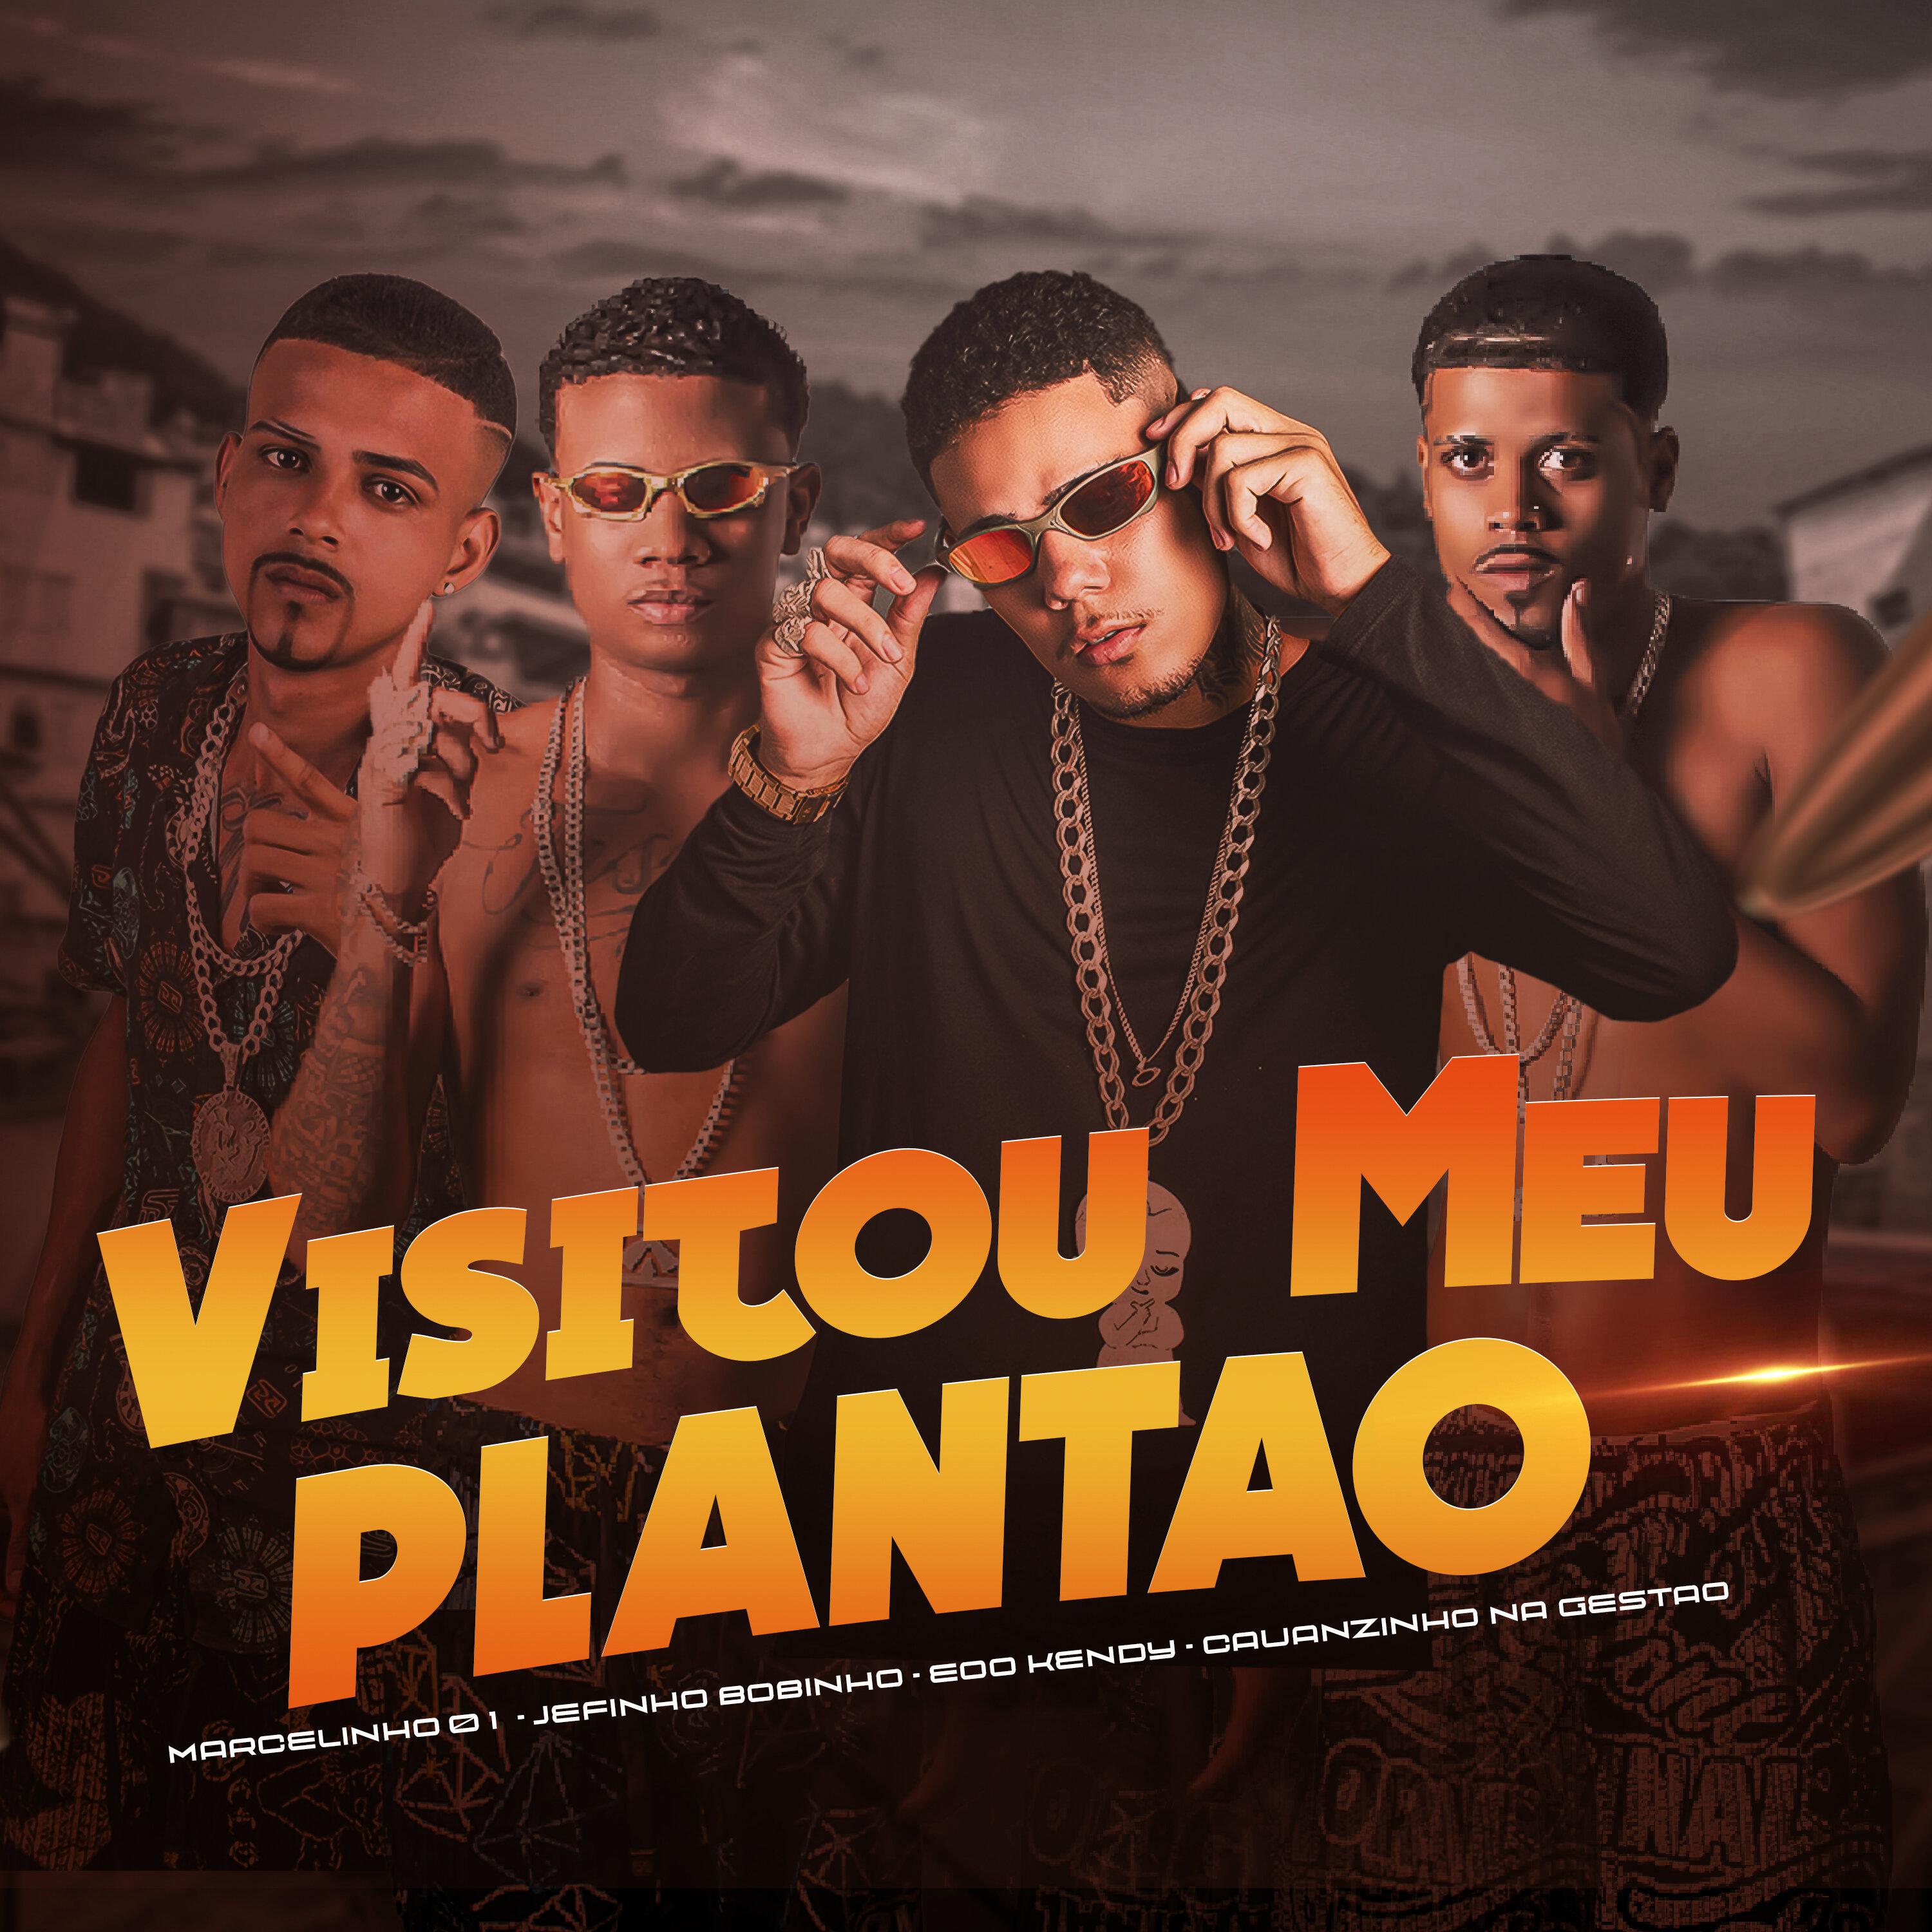 eoo kendy - Visitou Meu Plantão (feat. macelinho 01)